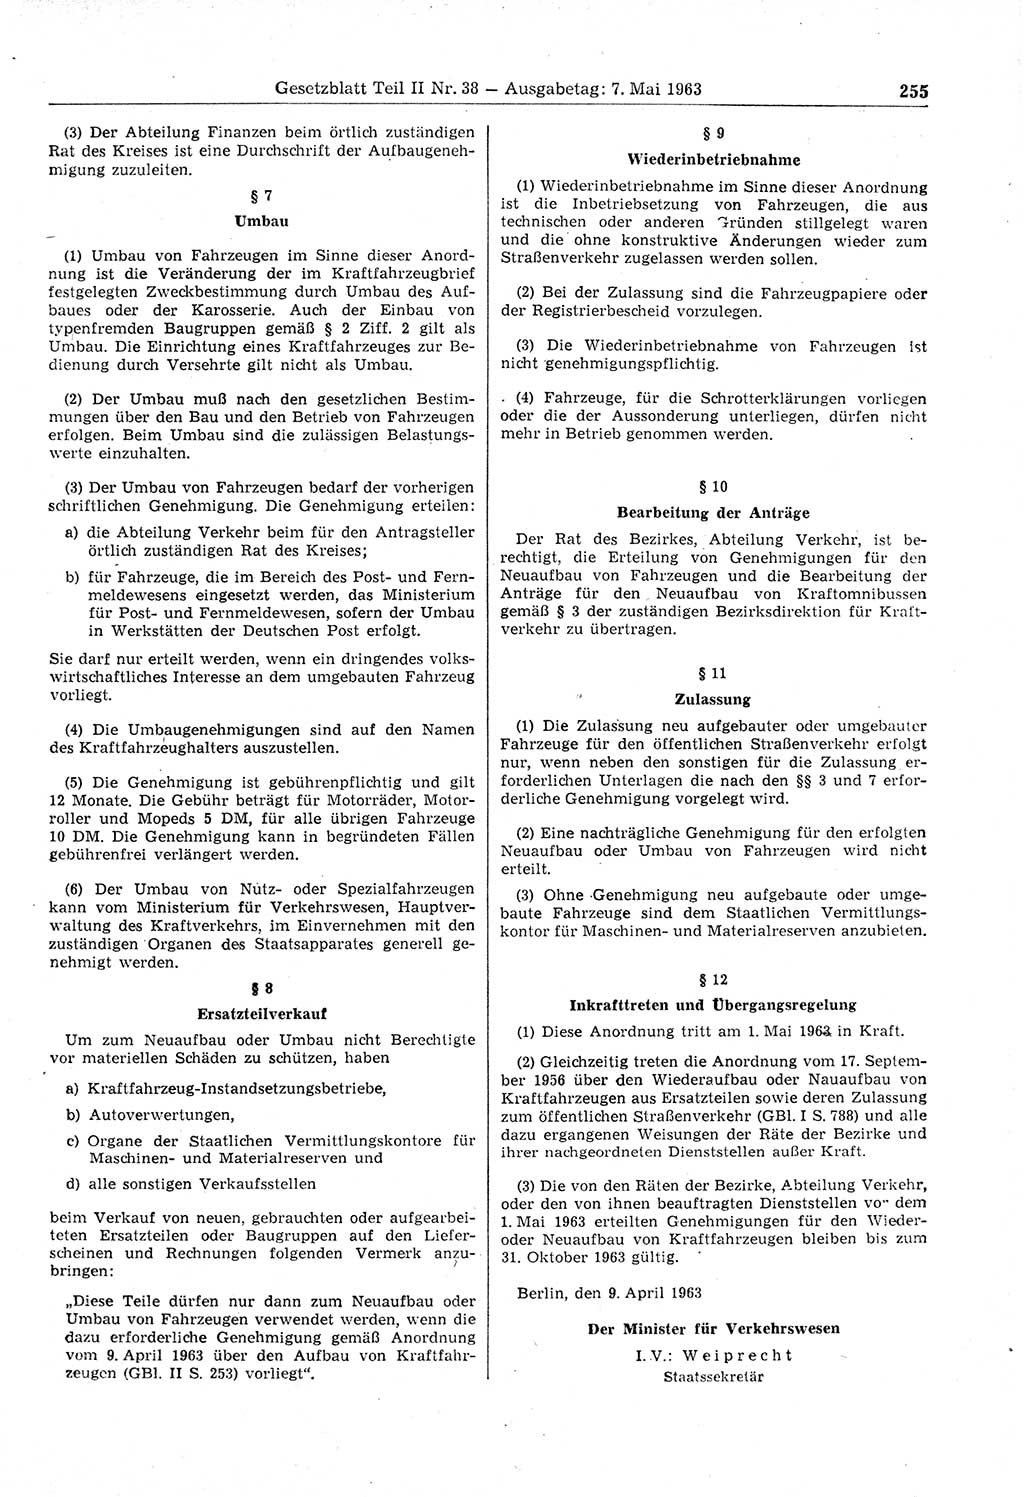 Gesetzblatt (GBl.) der Deutschen Demokratischen Republik (DDR) Teil ⅠⅠ 1963, Seite 255 (GBl. DDR ⅠⅠ 1963, S. 255)